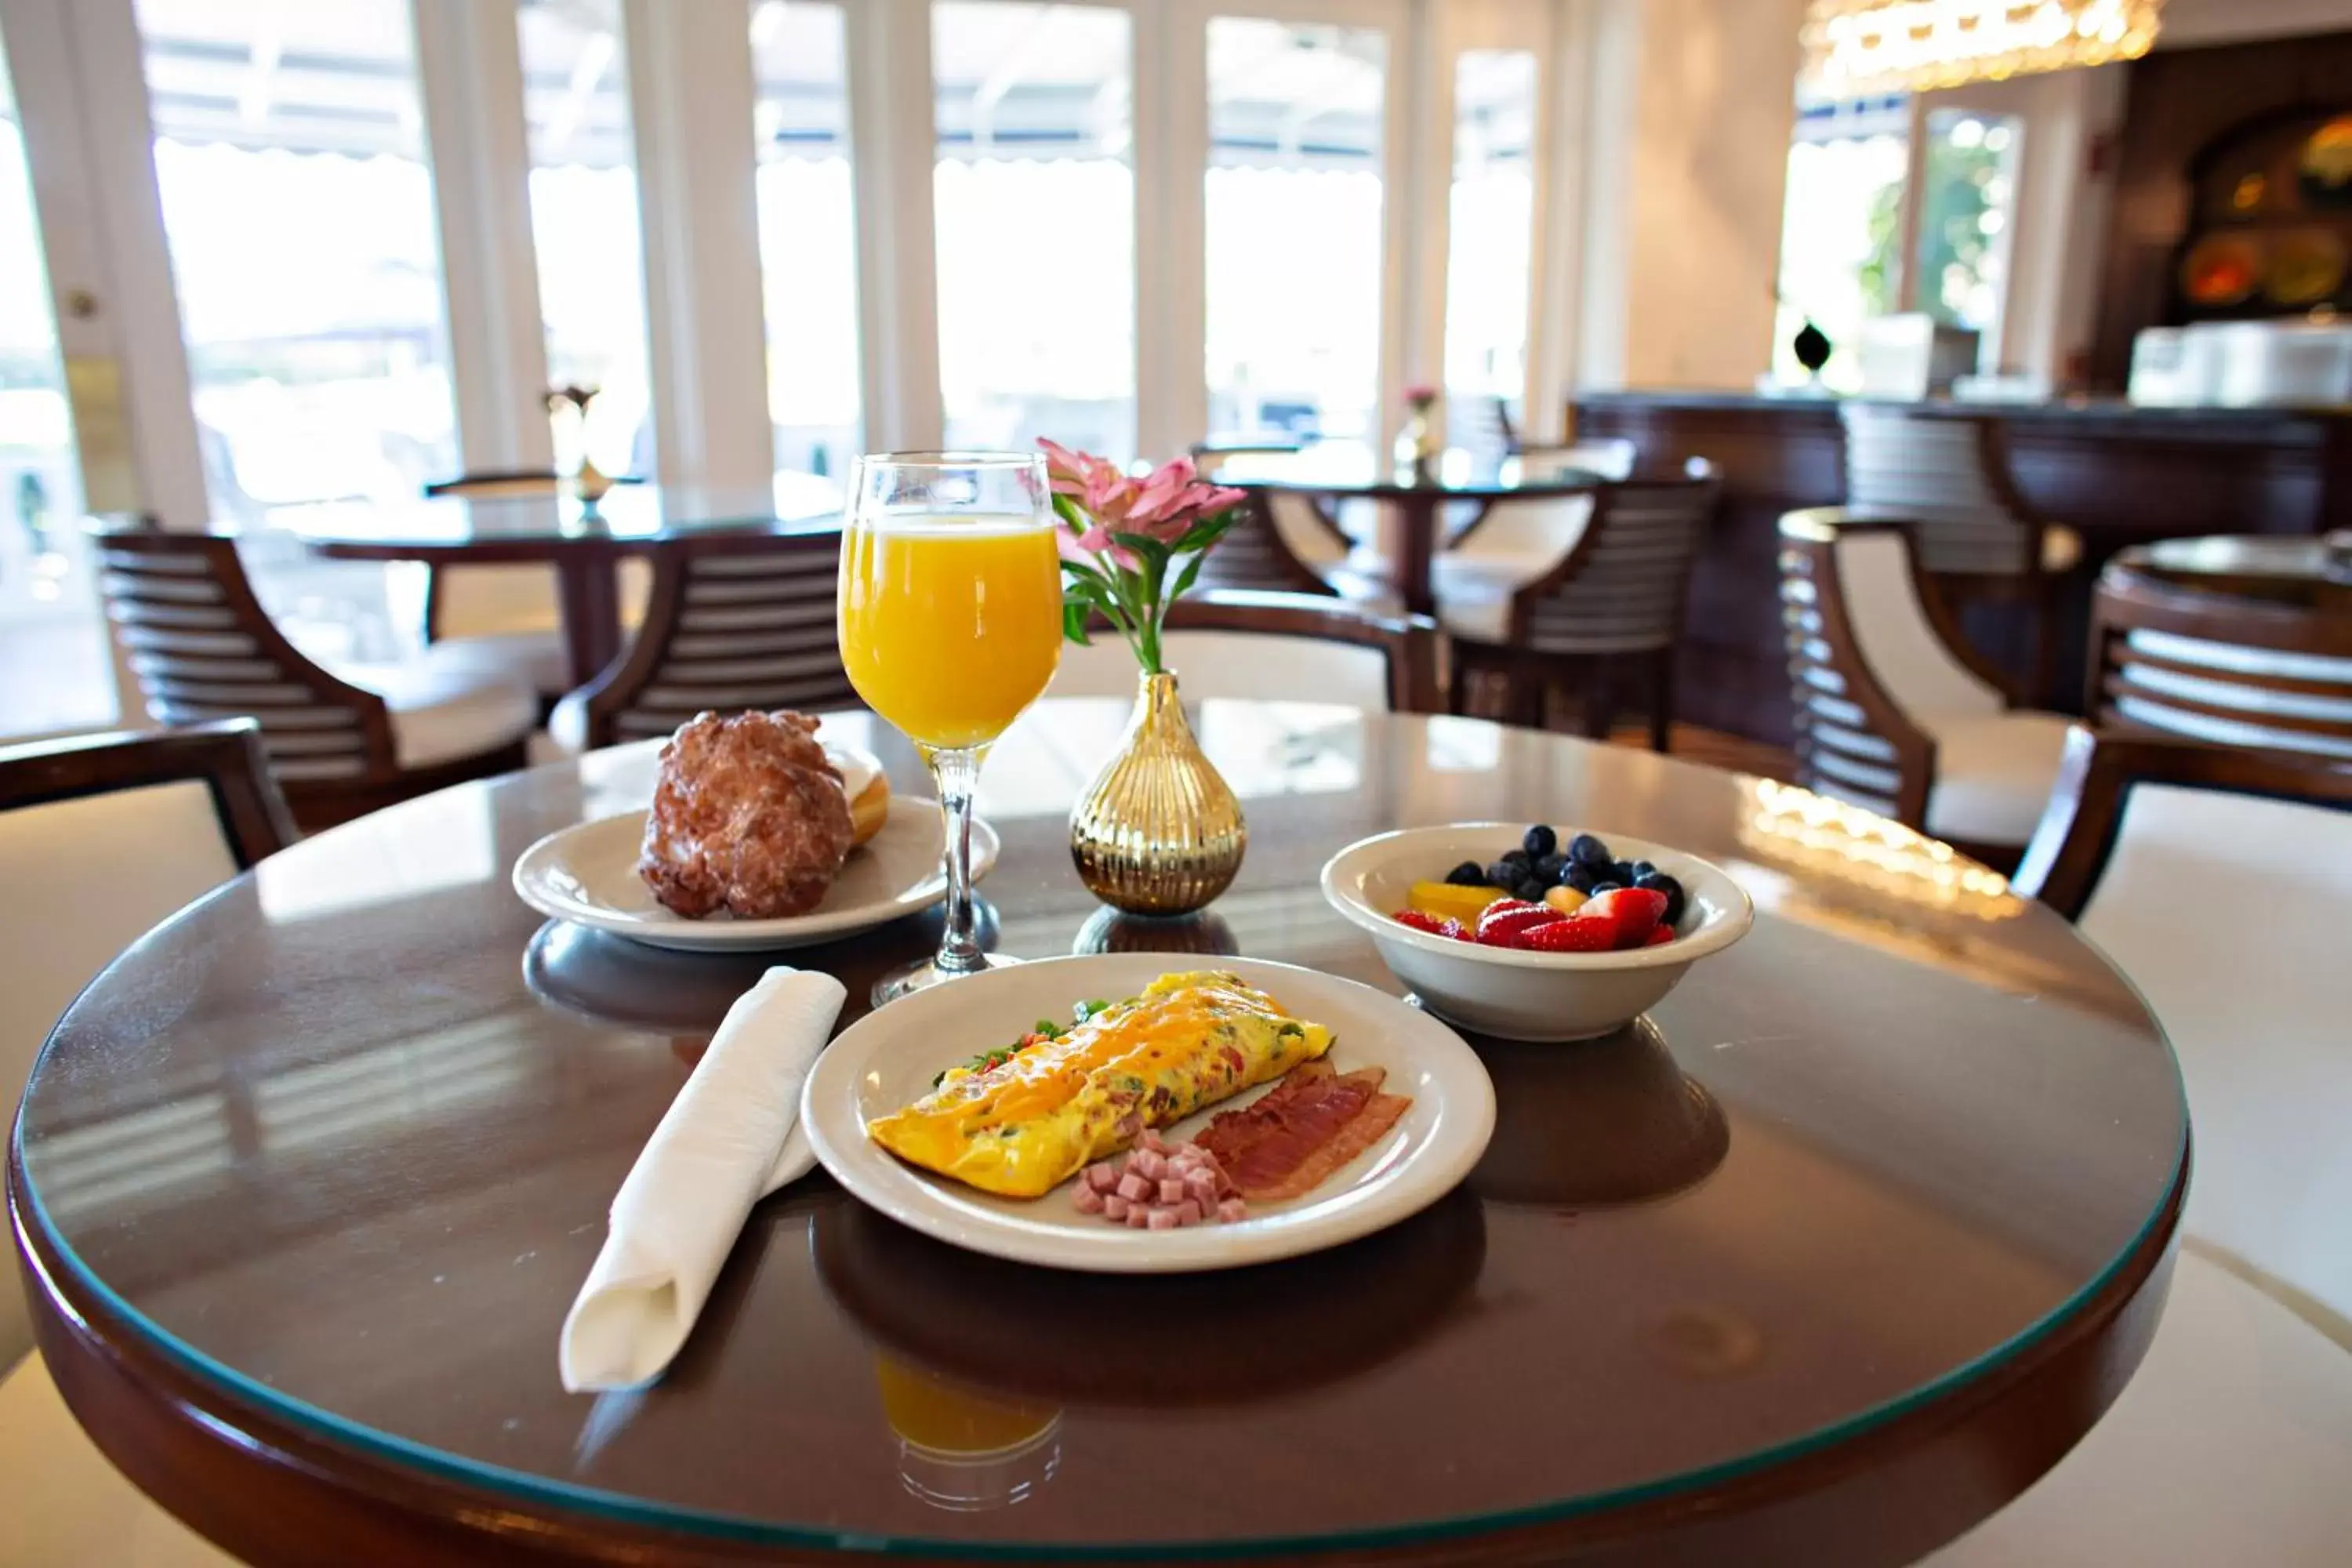 Buffet breakfast in Inn at Pelican Bay